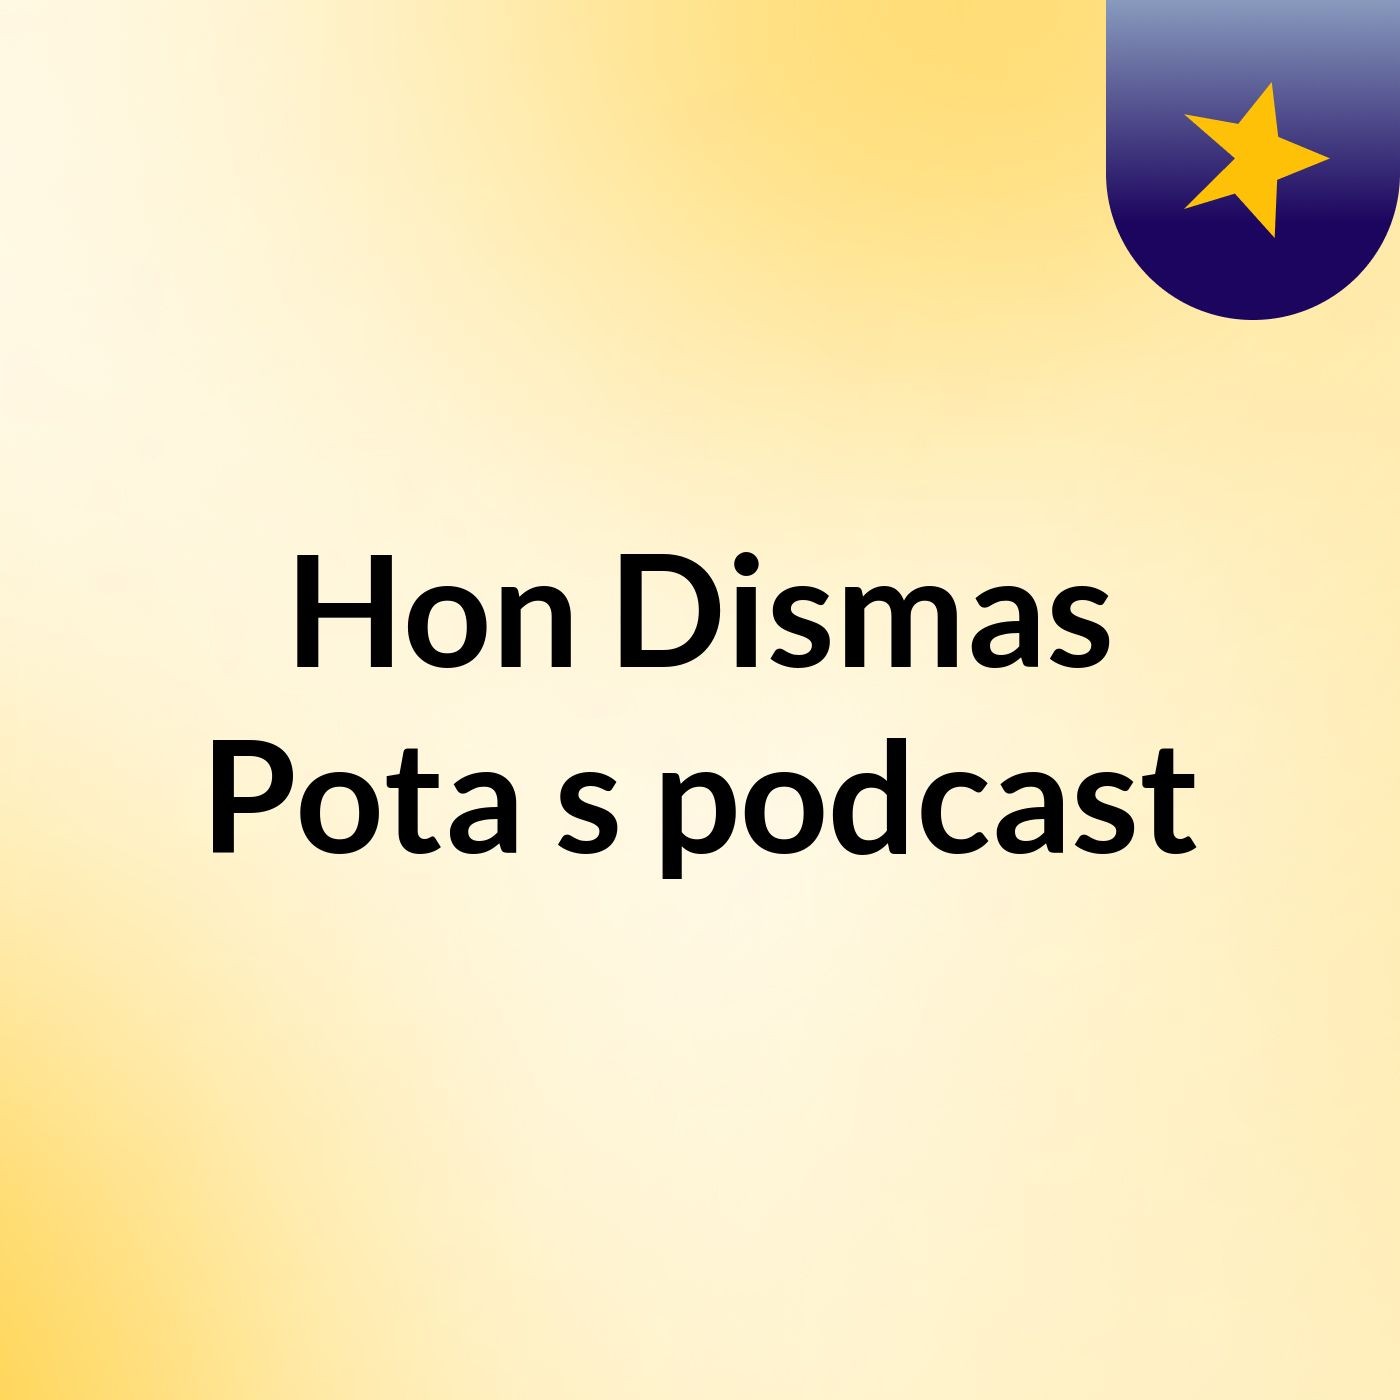 Hon Dismas Pota's podcast